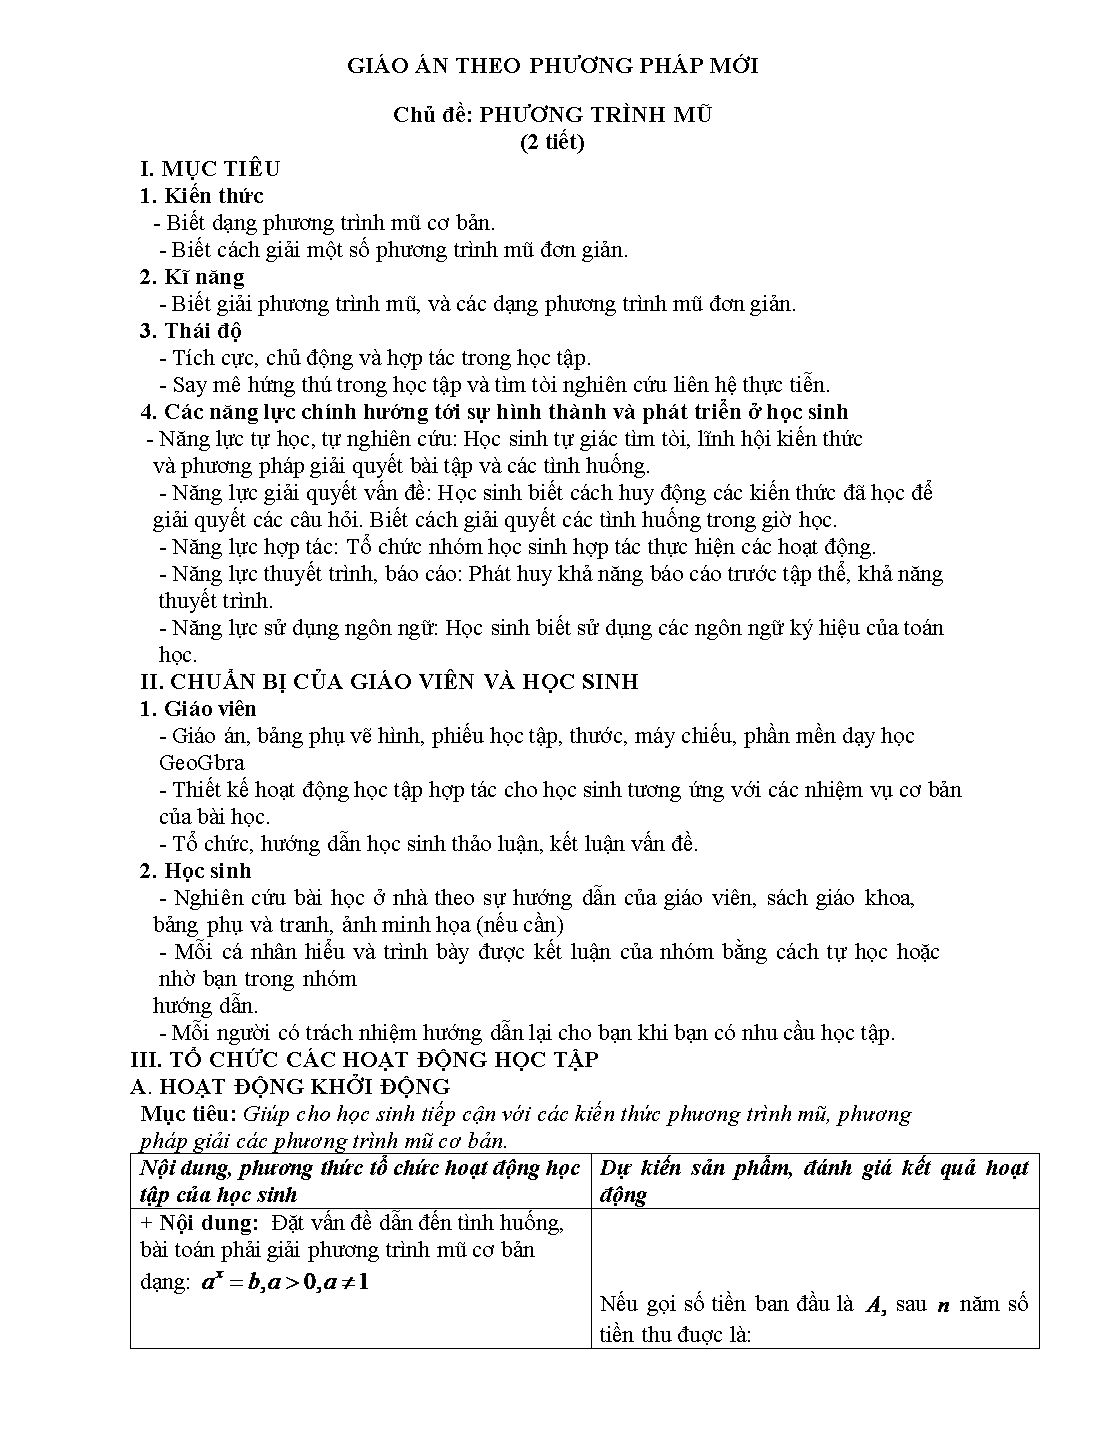 Giáo án môn Toán Lớp 12 (Theo phương pháp mới) - Chủ đề: Phương trình mũ trang 1